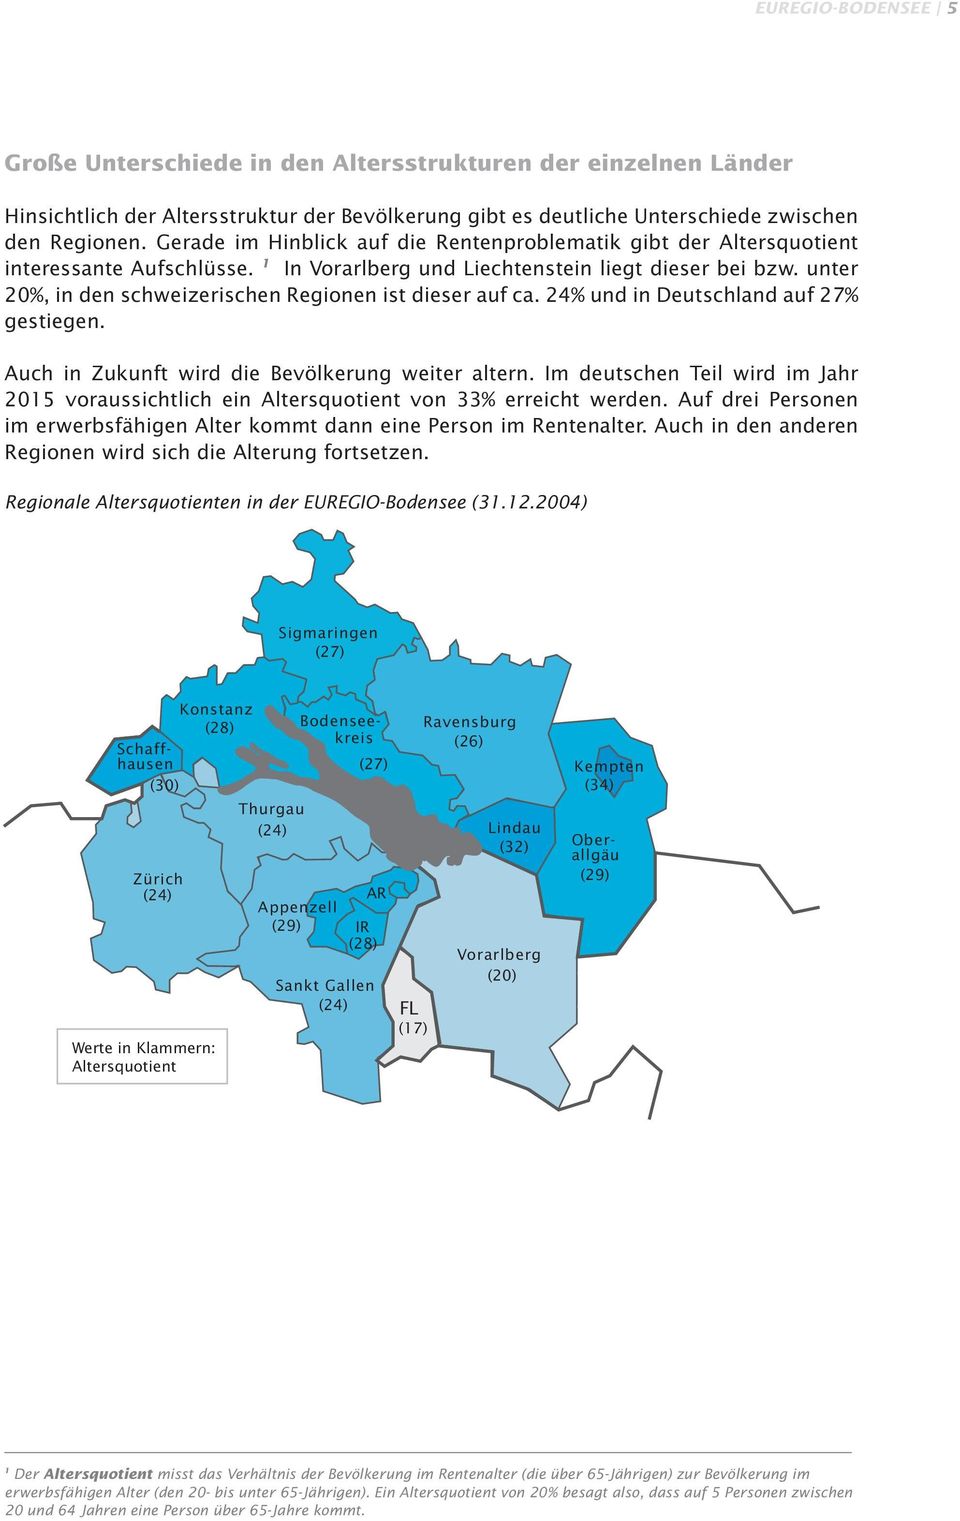 unter 20%, in den schweizerischen Regionen ist dieser auf ca. 24% und in Deutschland auf 27% gestiegen. Auch in Zukunft wird die Bevölkerung weiter altern.